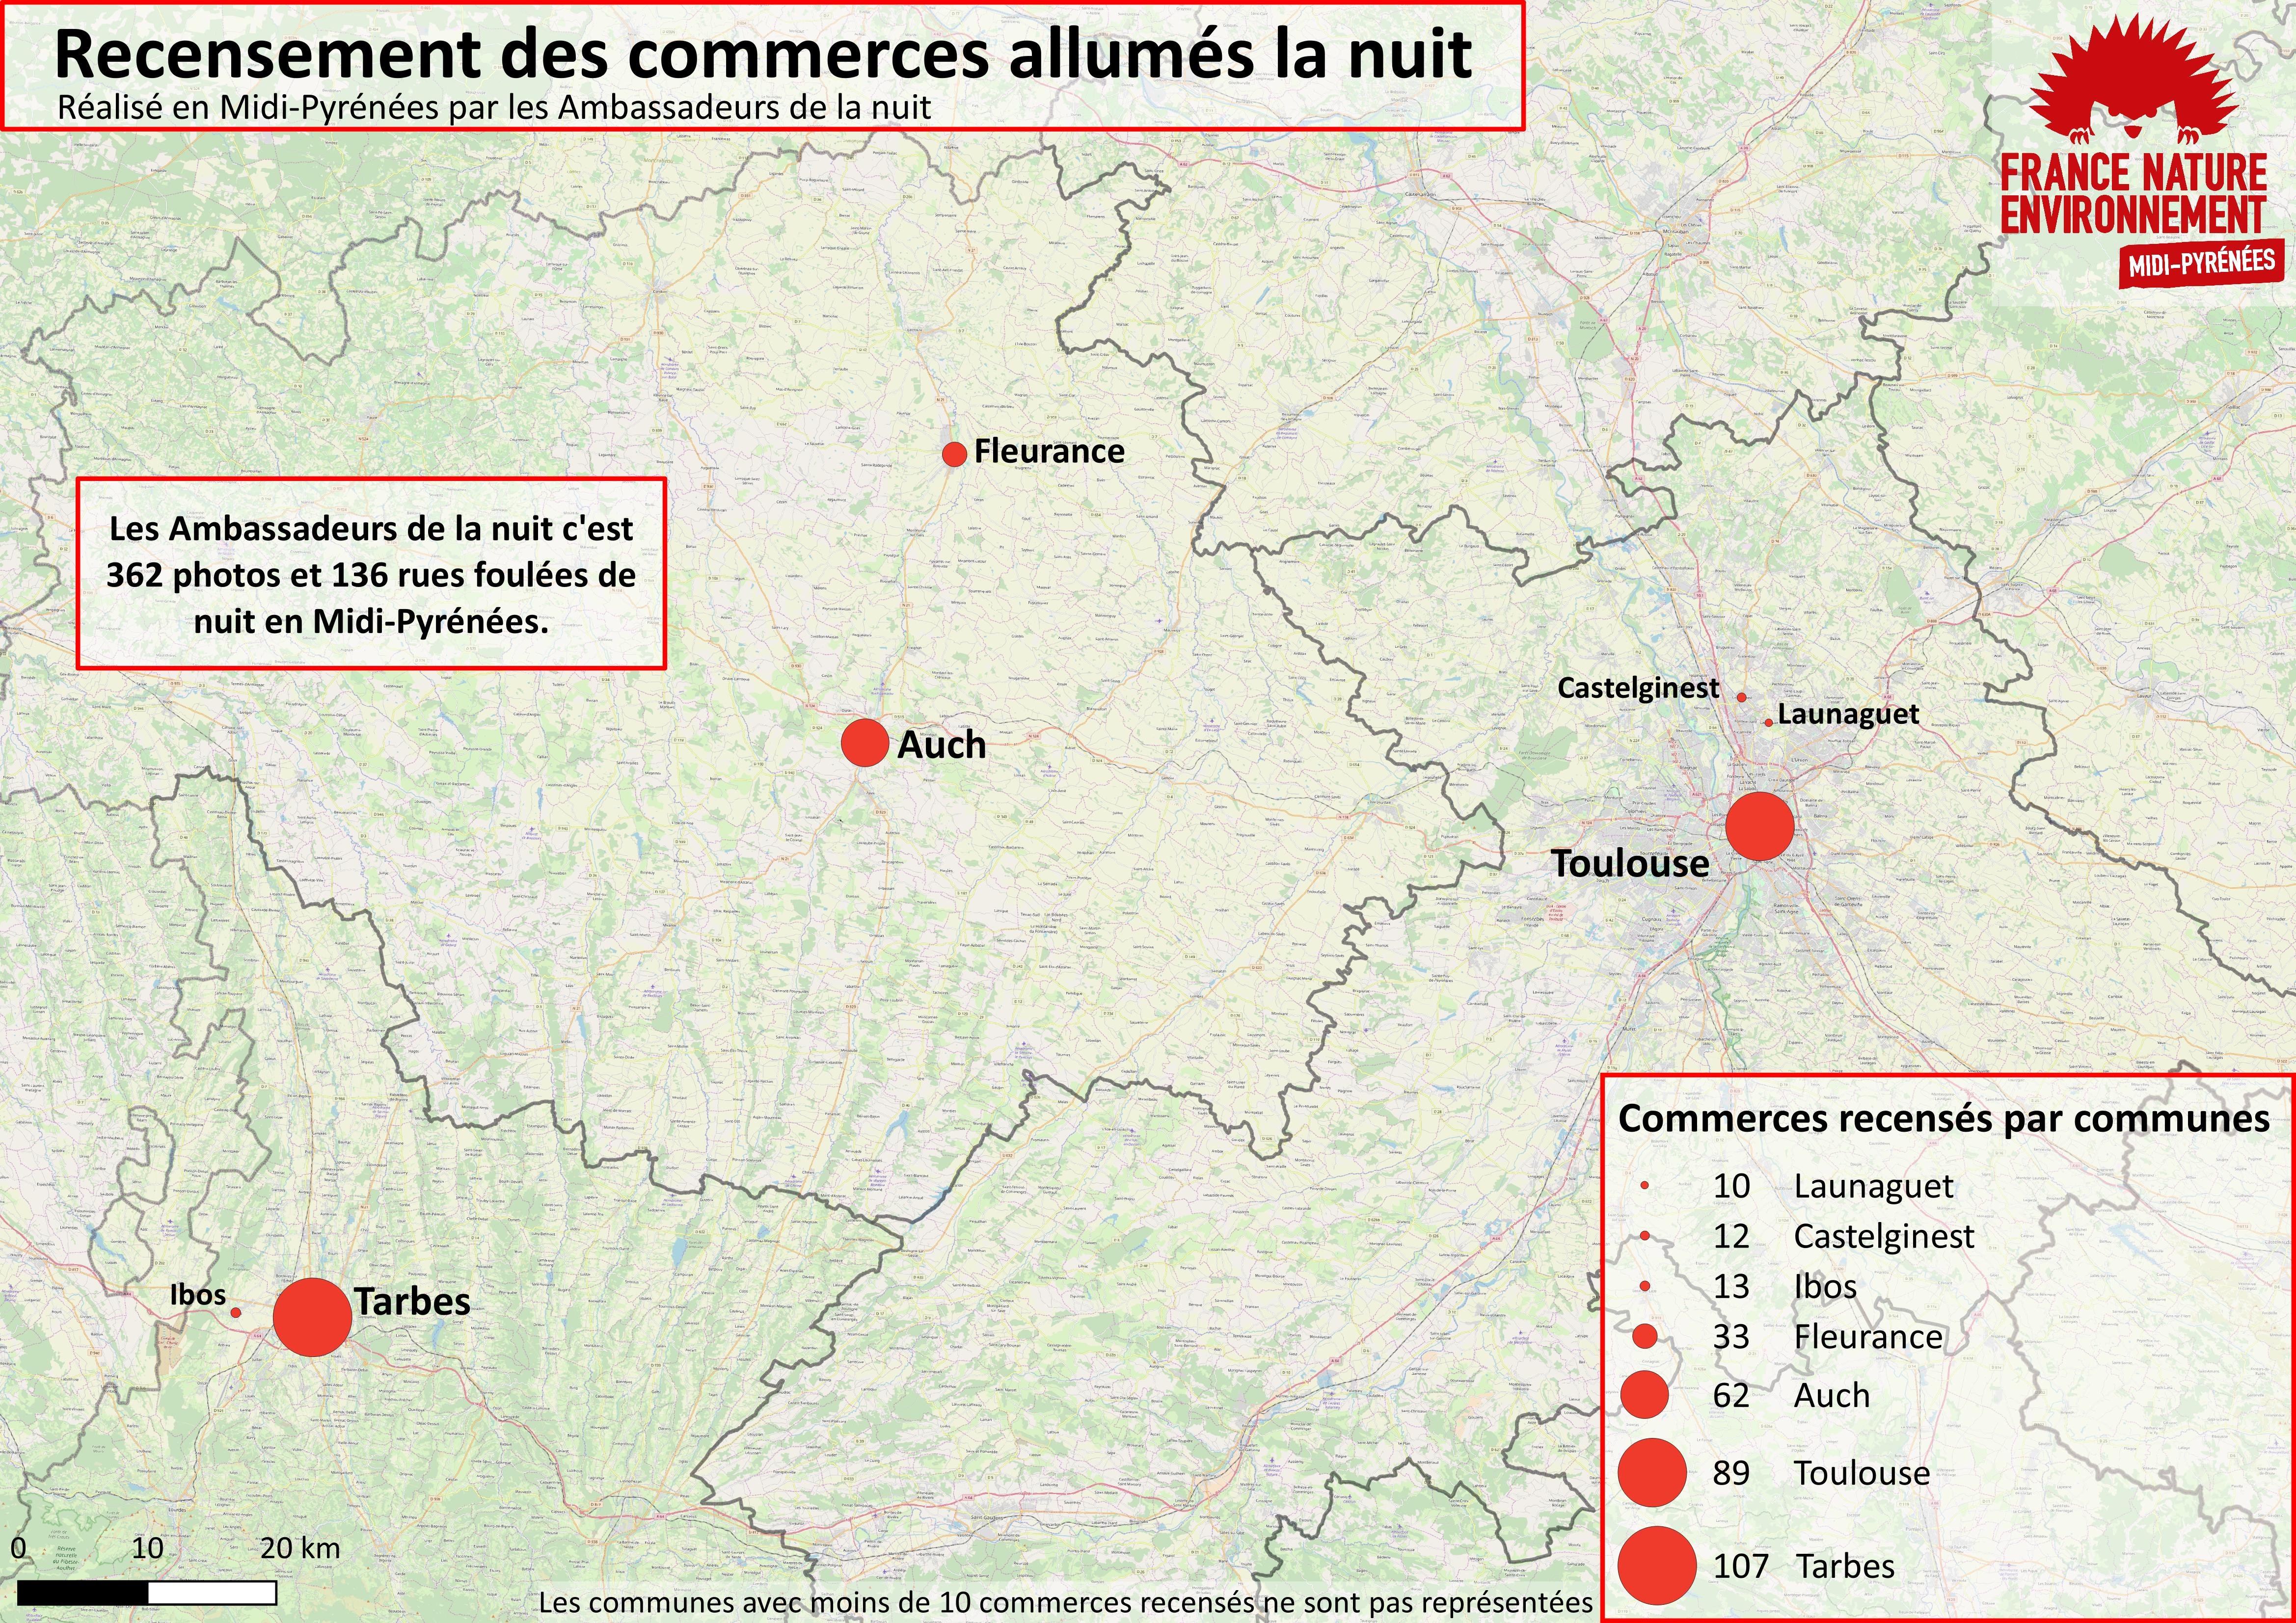 La lutte contre la pollution lumineuse prend de l'ampleur en Midi-Pyrénées